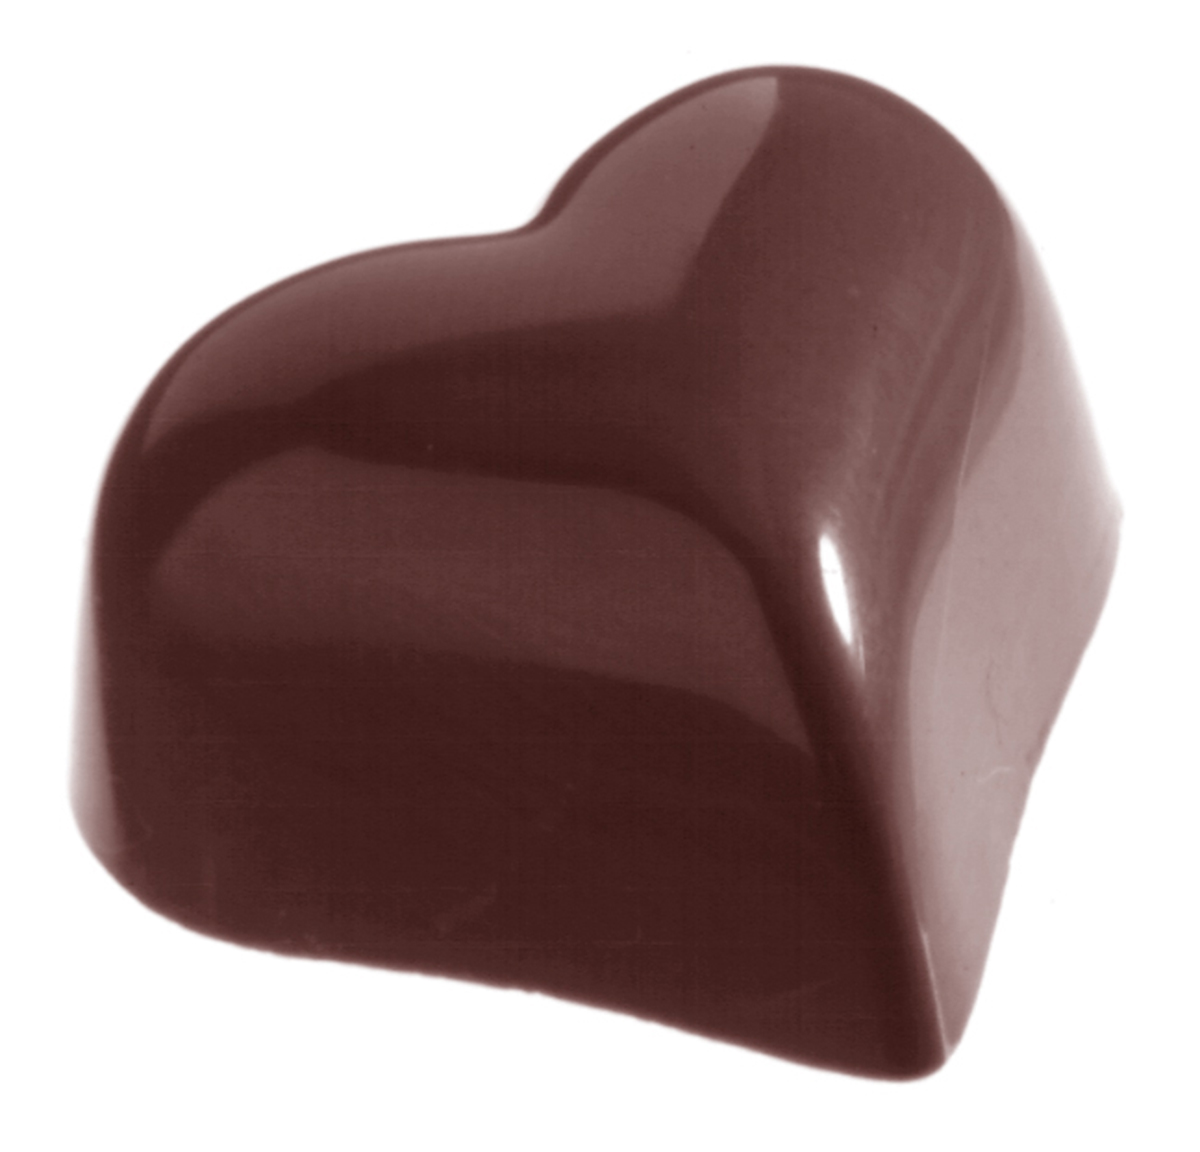 Billede af Professionel chokoladeform i polycarbonat - Small puffy heart 9 g CW1526